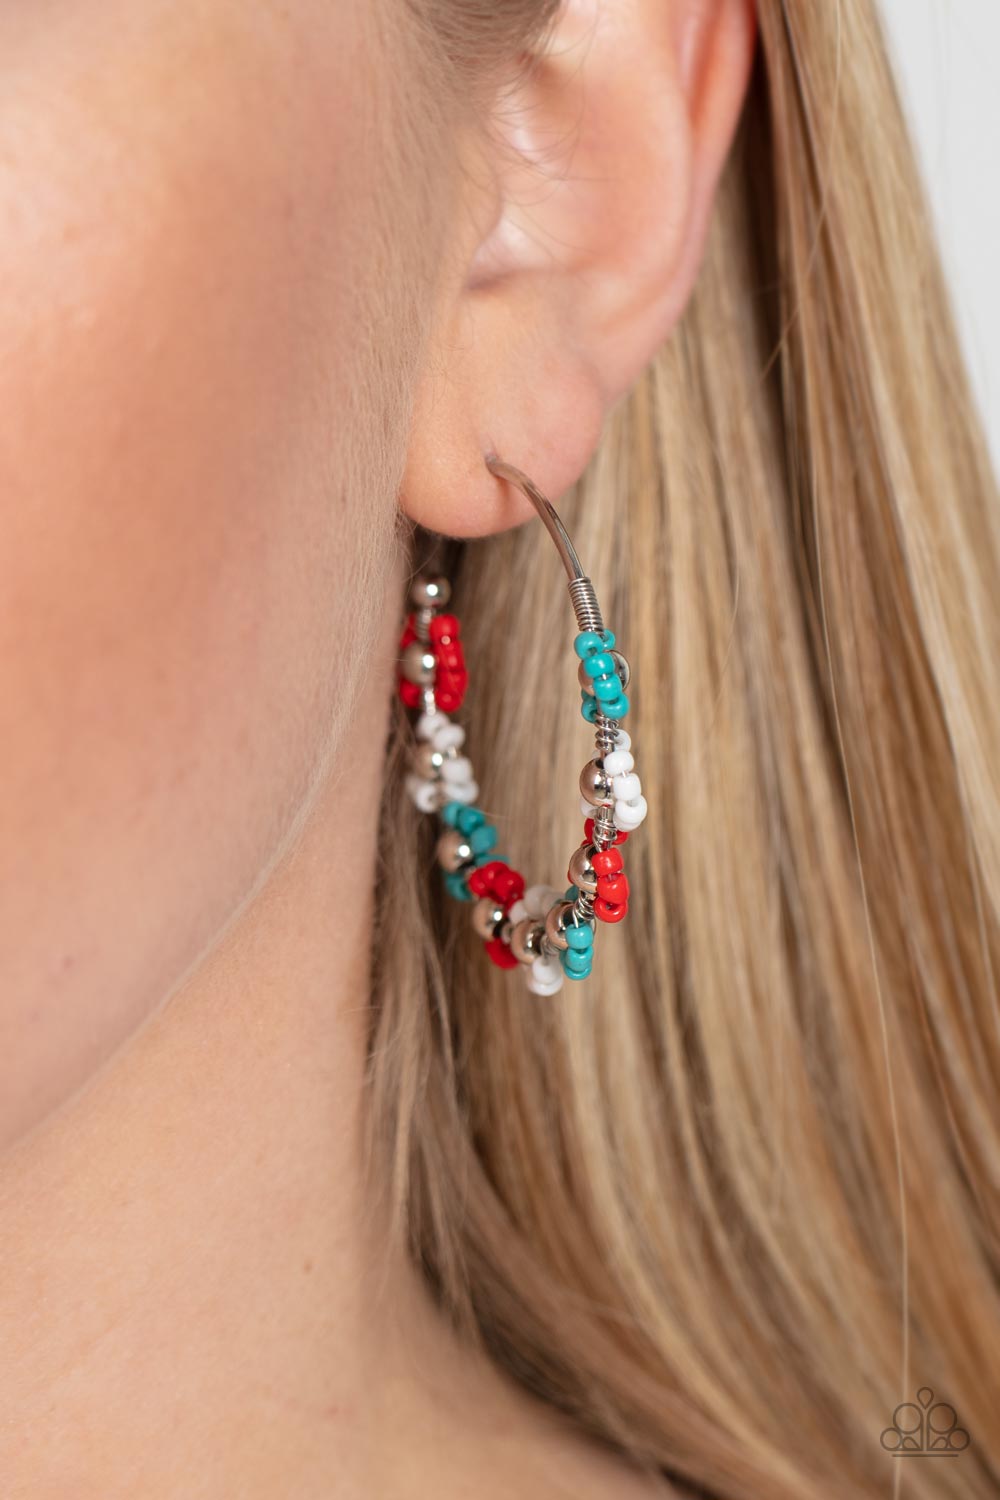 Growth Spurt Red Earrings - Jewelry by Bretta